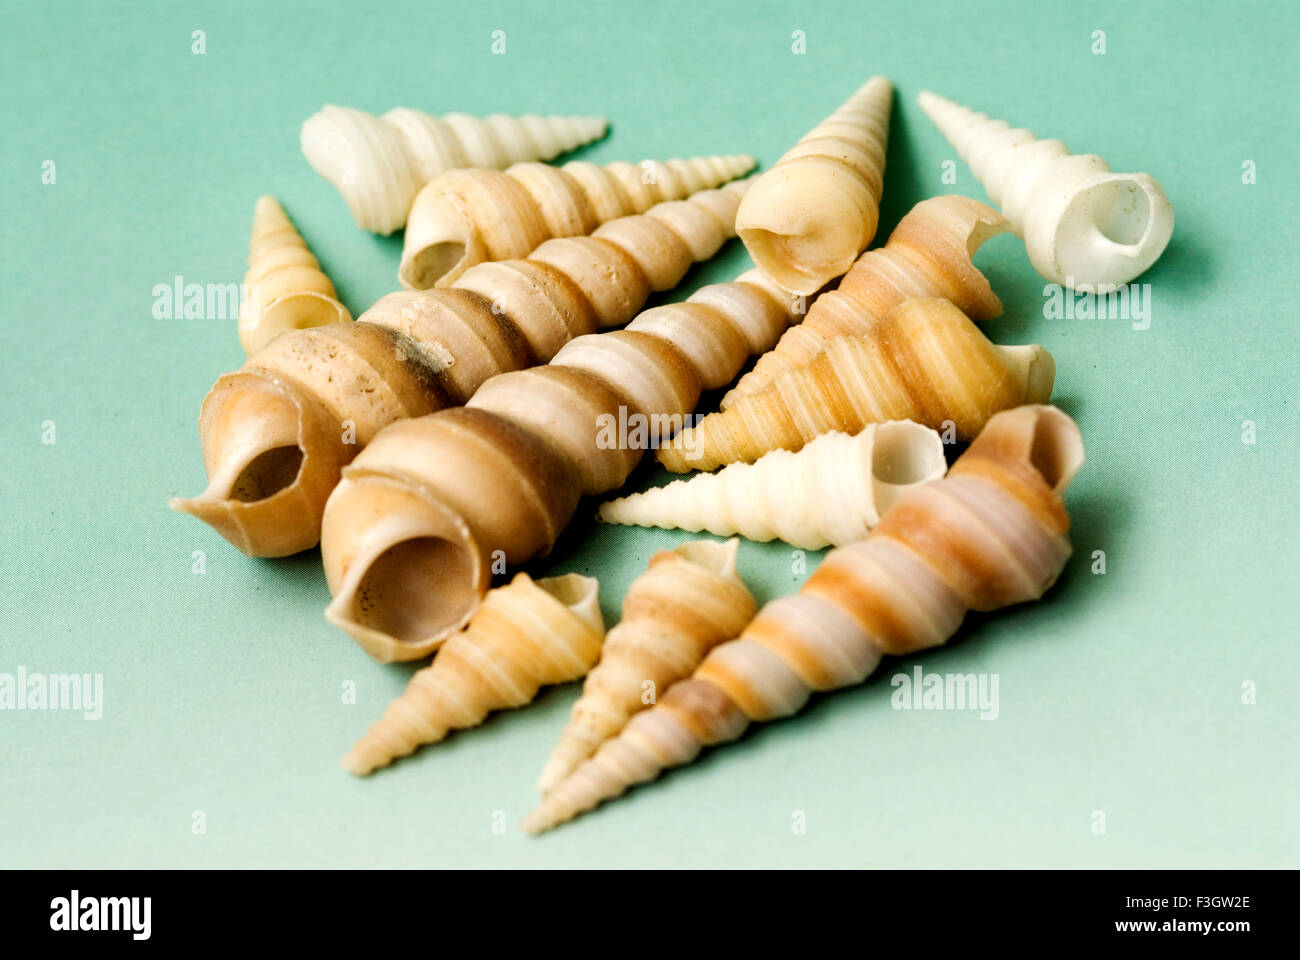 shell, shells, seashell, seashells, sea shell, sea shells Stock Photo